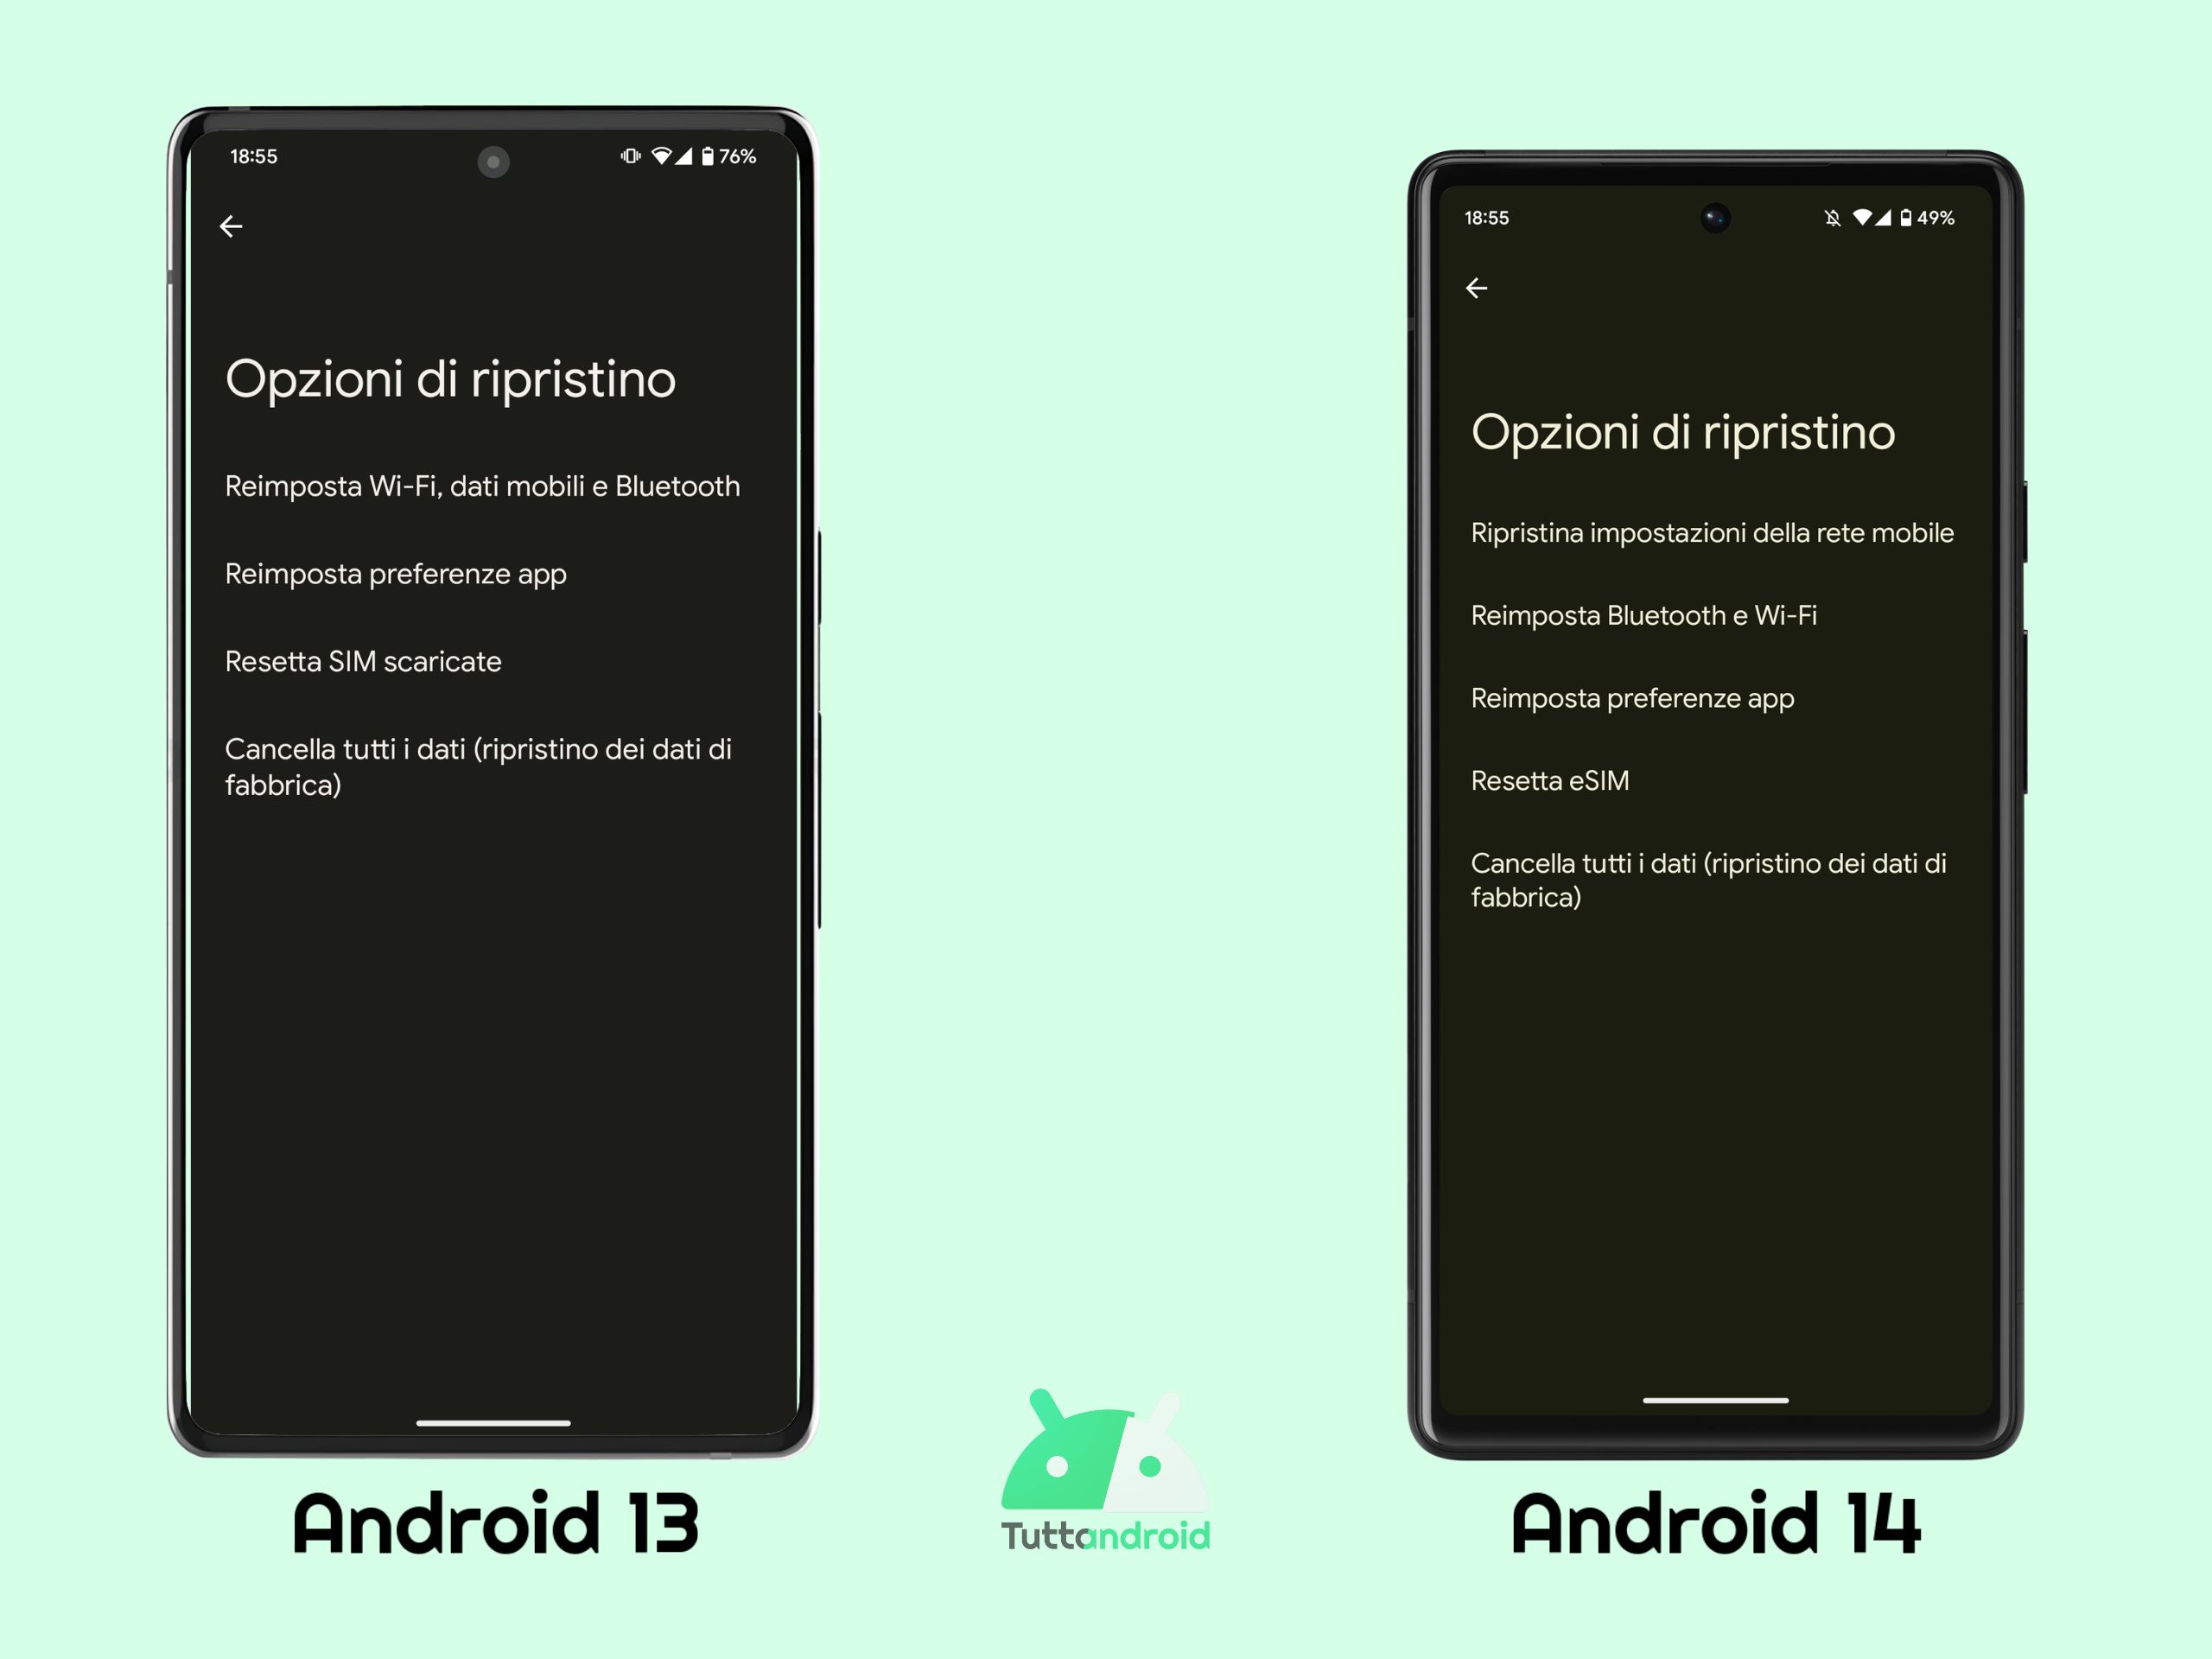 Menu "Opzioni di ripristino" - Android 13 vs Android 14 DP1